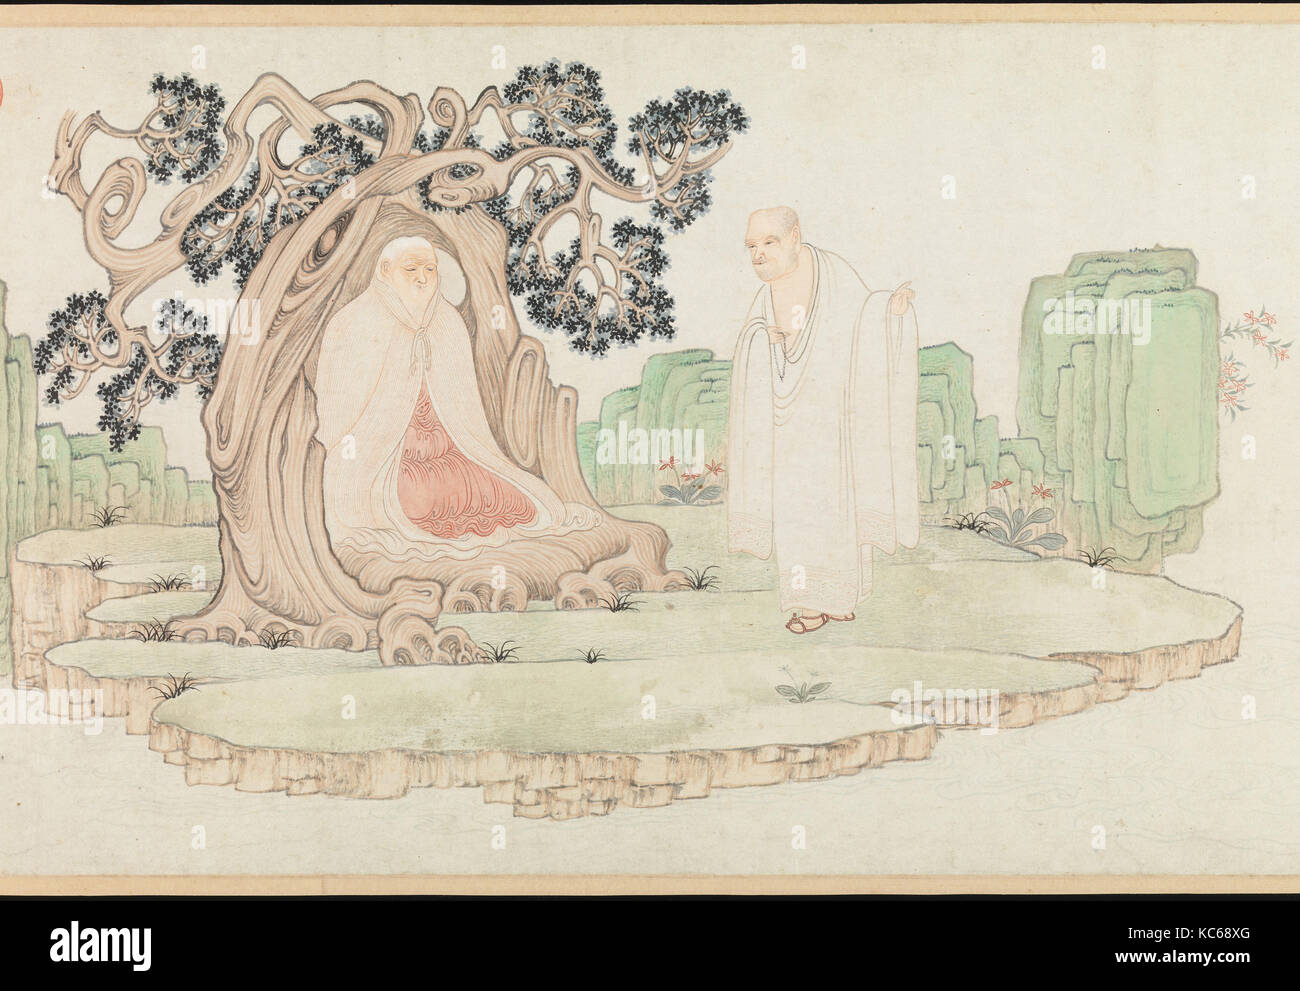 明  吳彬  十六羅漢圖  卷, The Sixteen Luohans, Wu Bin, dated 1591 Stock Photo